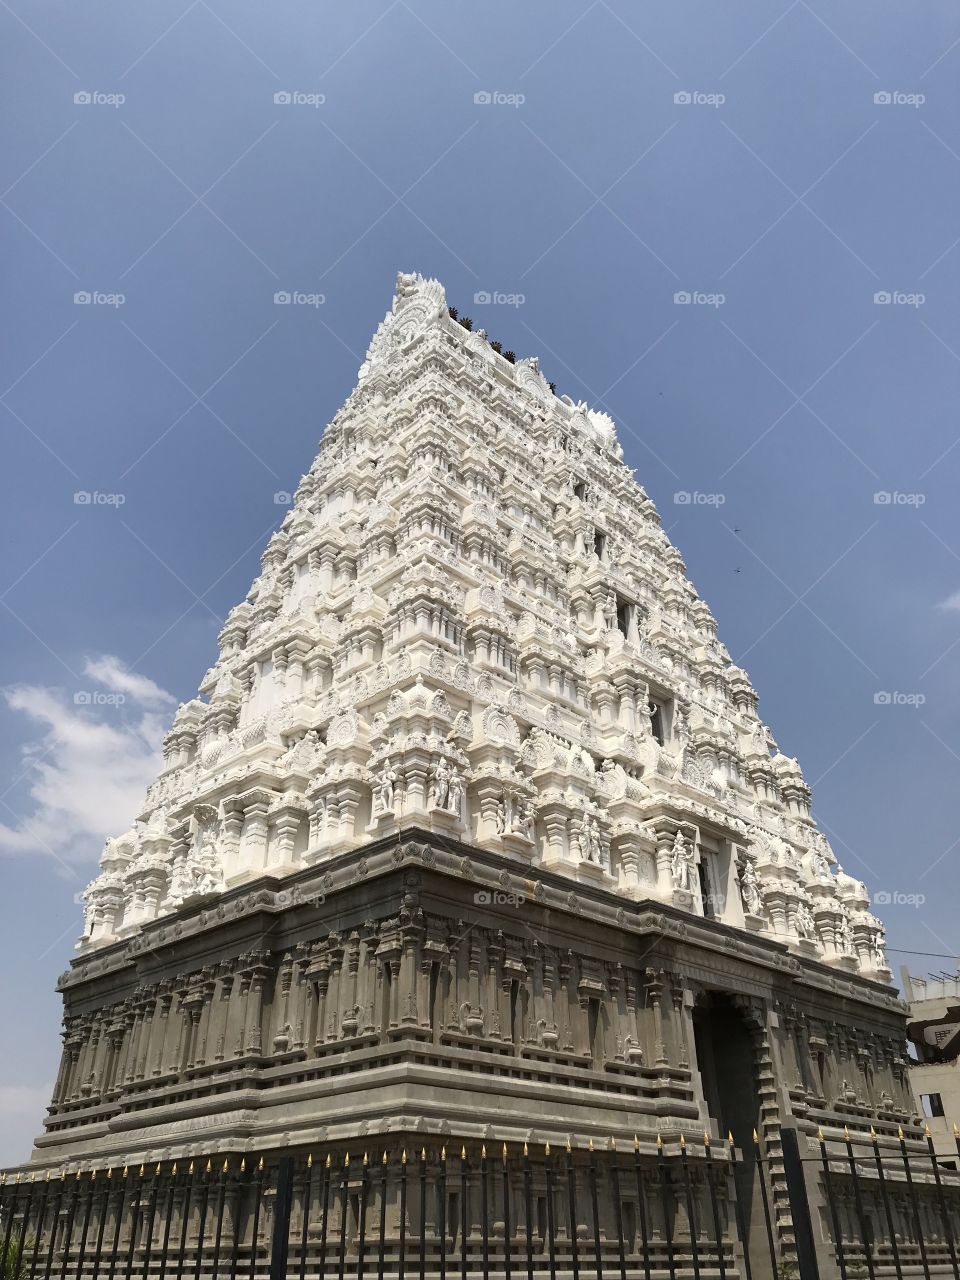 Temple Gopuram in AndhraPradesh, India. Beautiful architecture.